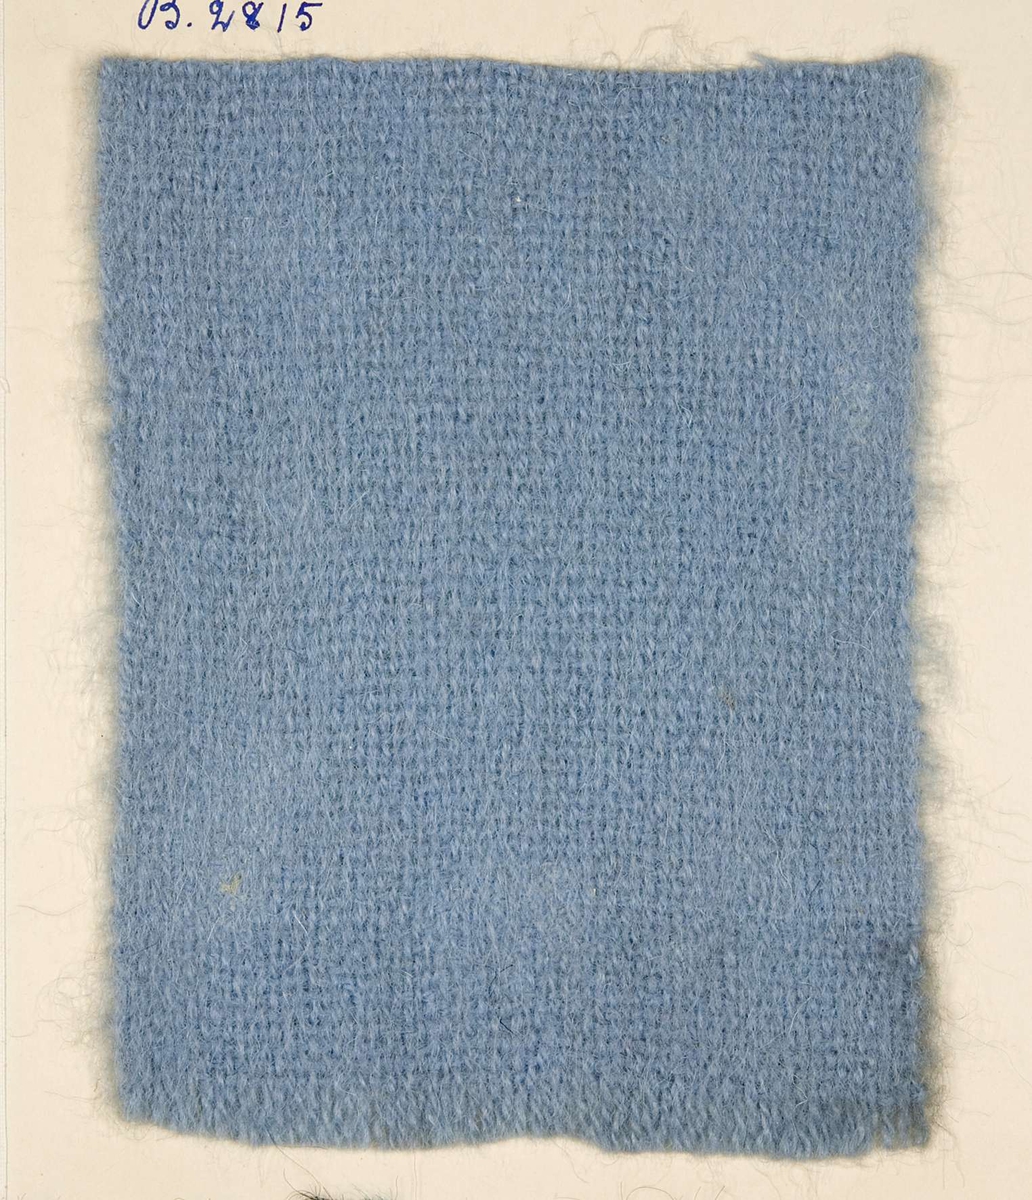 Vävprov ämnat för barnhalsduk vävt med ullgarn i tuskaft, ljusblått. Vävprovet har nummer "B-2815".